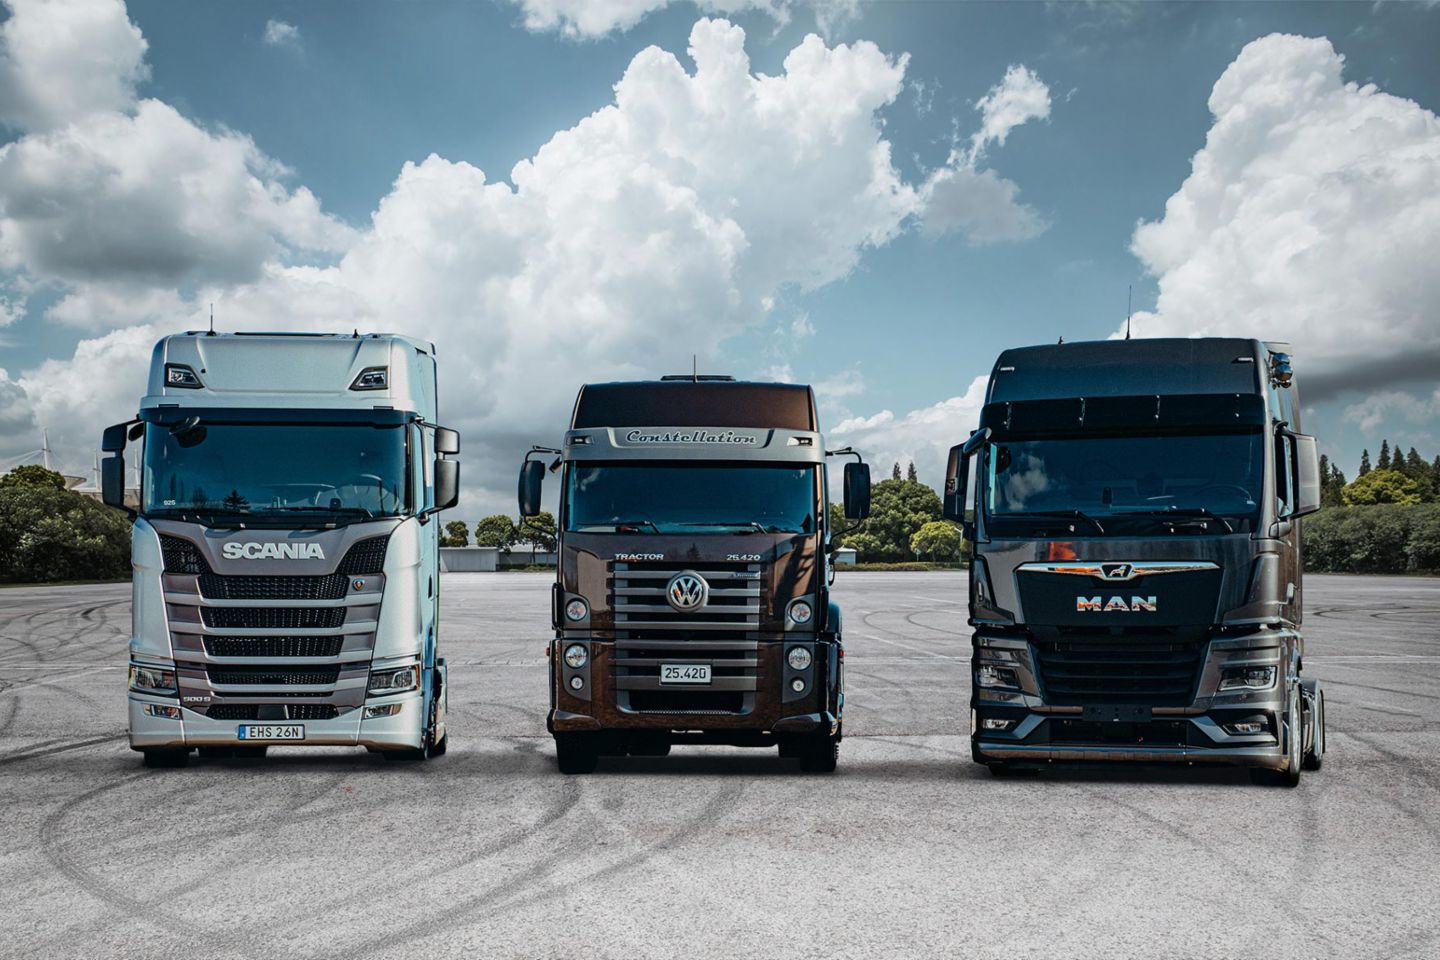 Les ventes de camions Scania, MAN, Volkswagen et Navistar